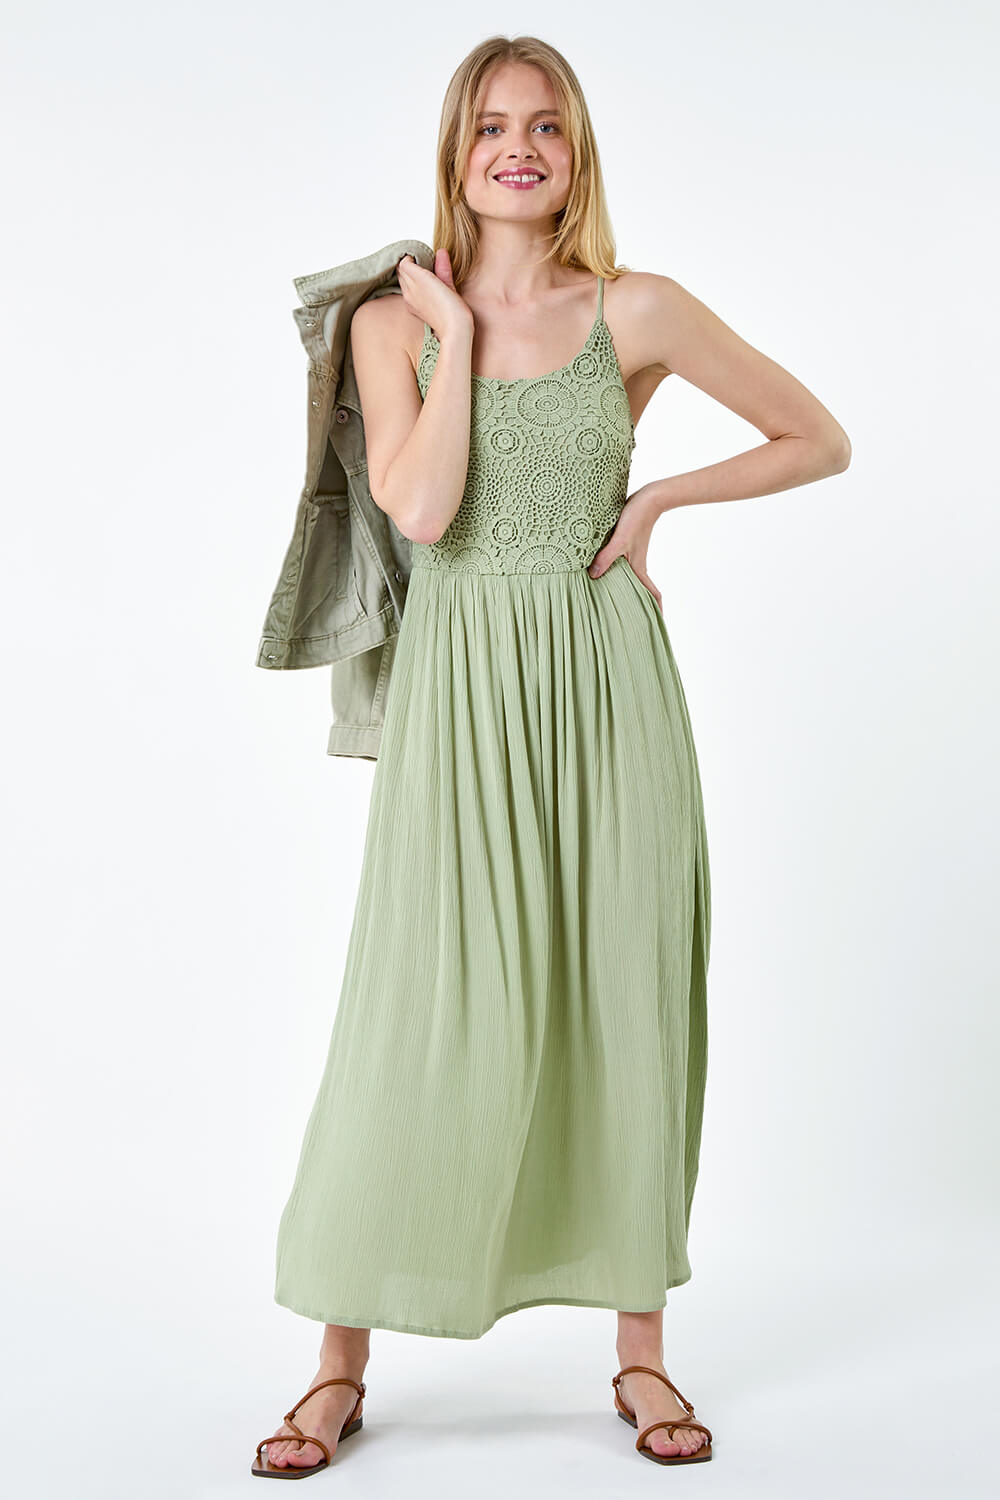 KHAKI Lace Bodice Shirred Midi Dress, Image 2 of 5